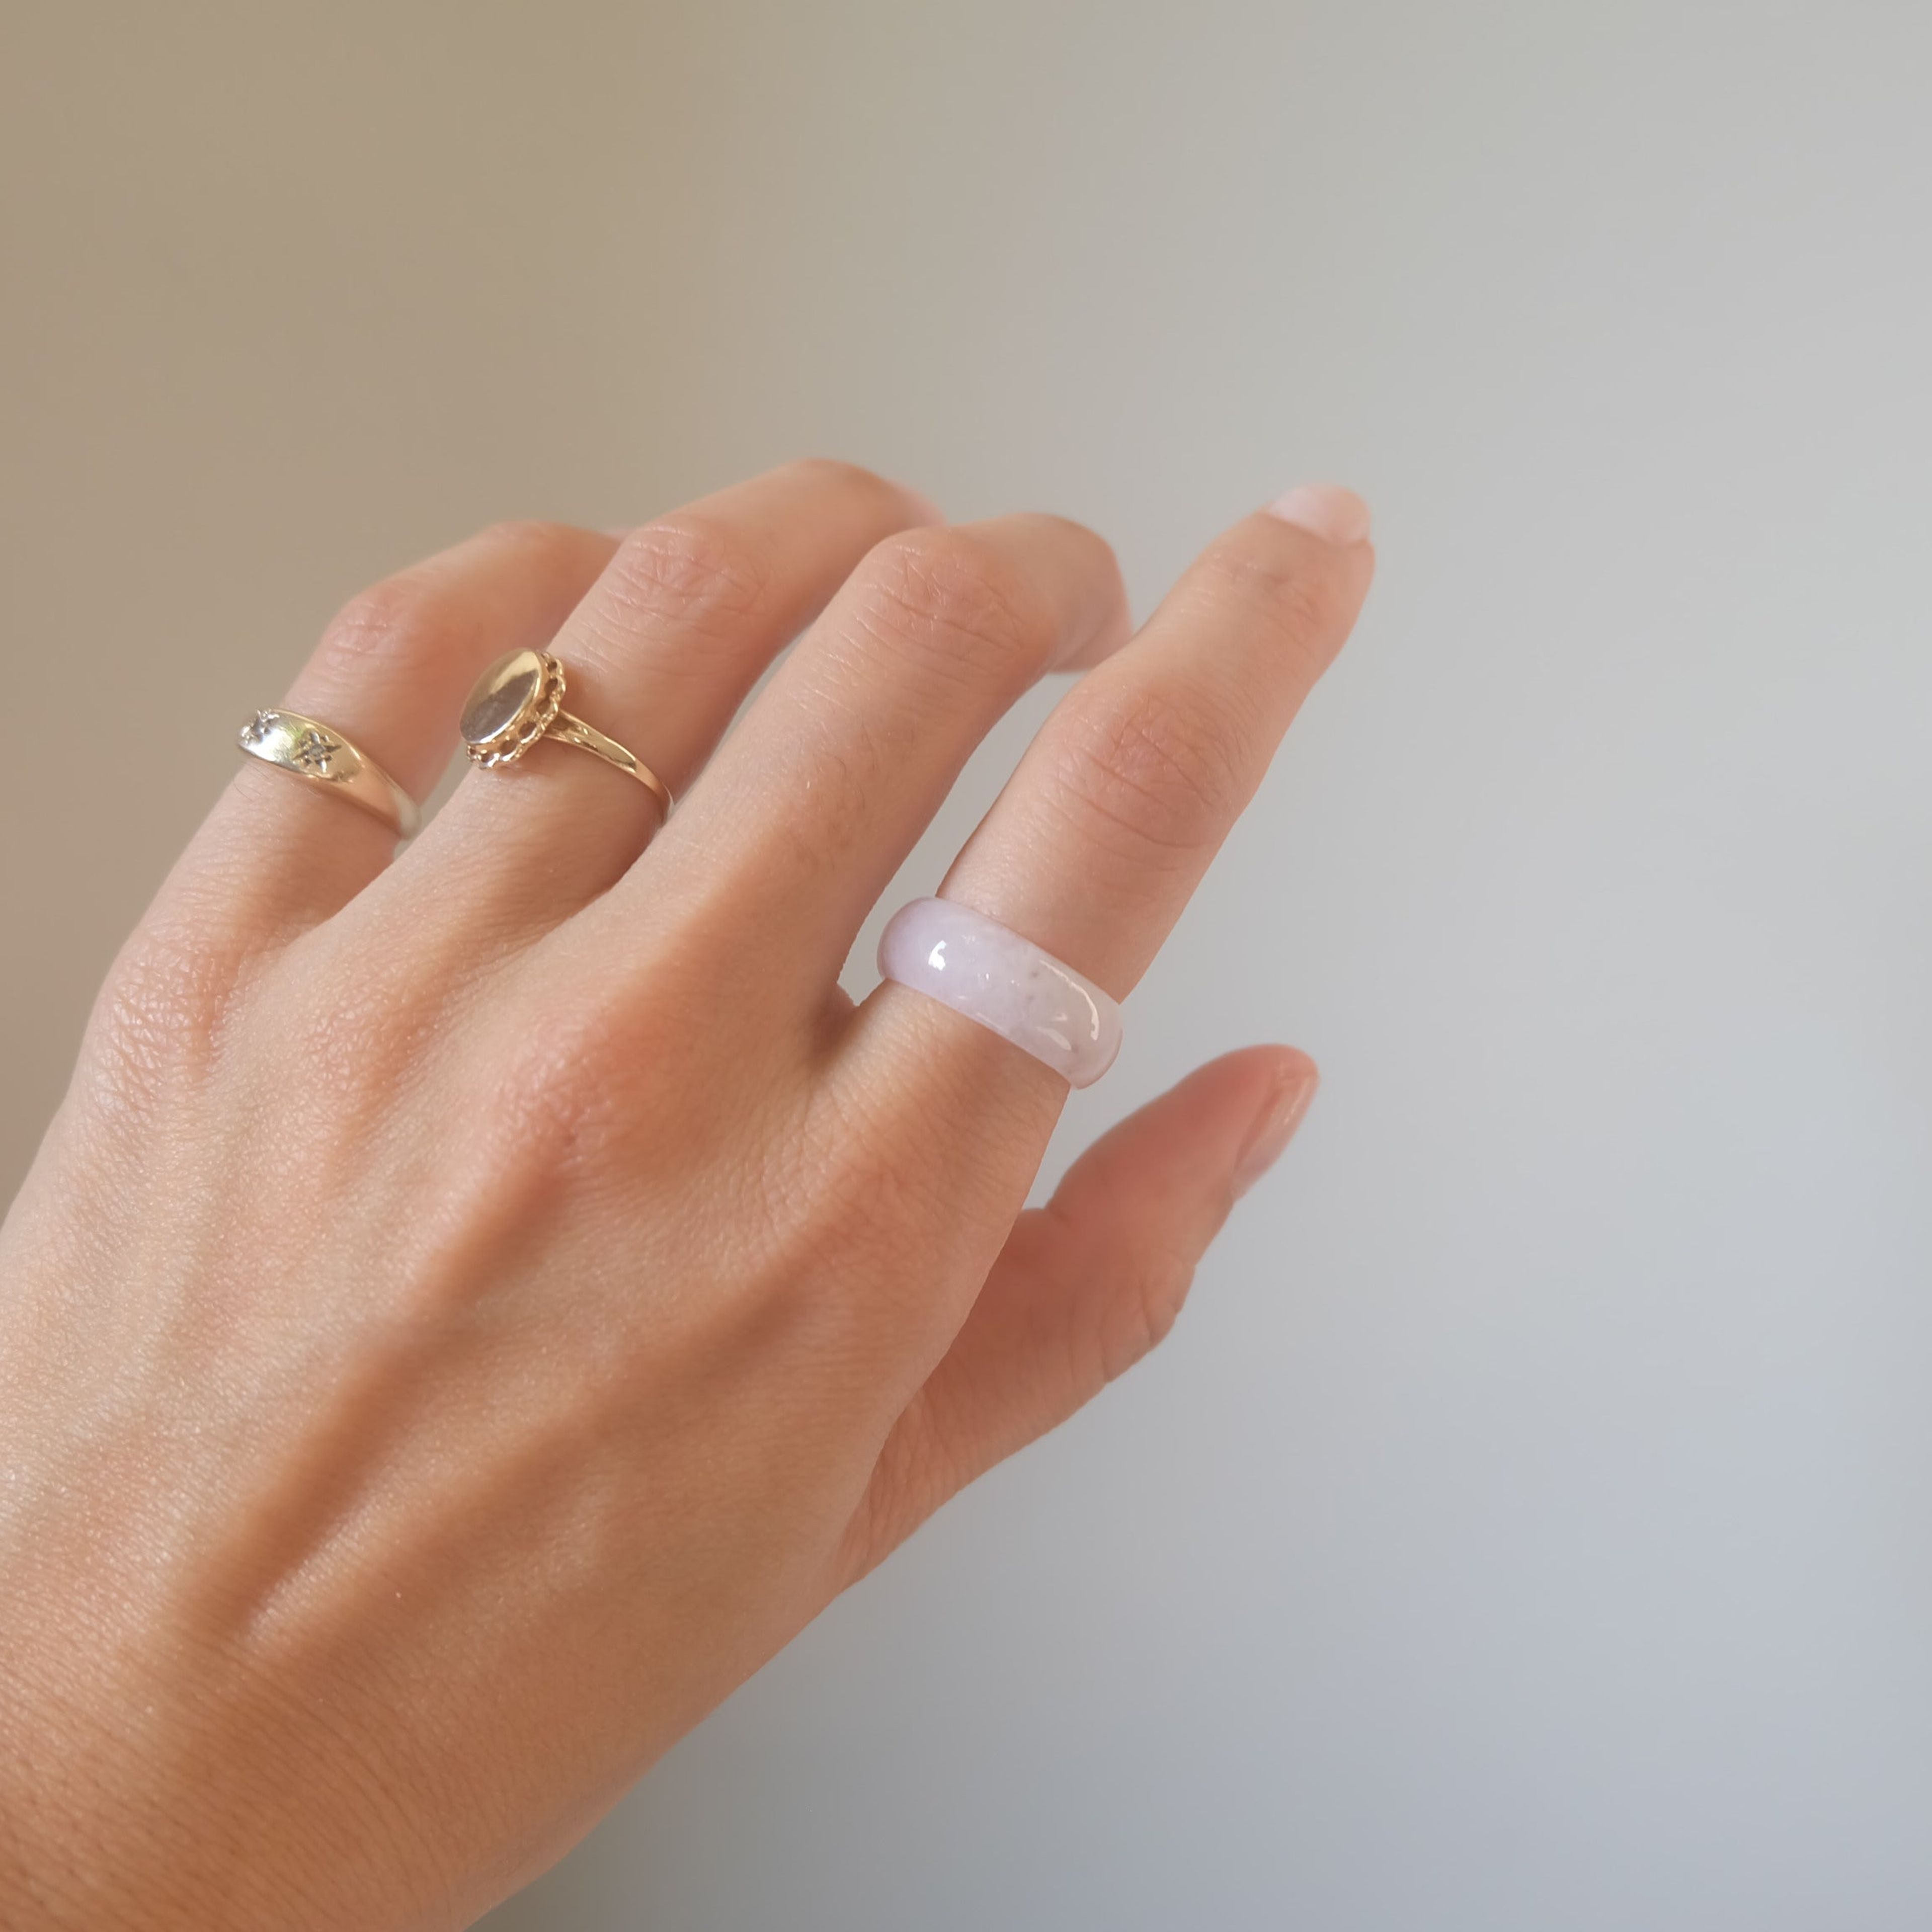 Lavender Jadeite Ring No. 003 - size 4.75